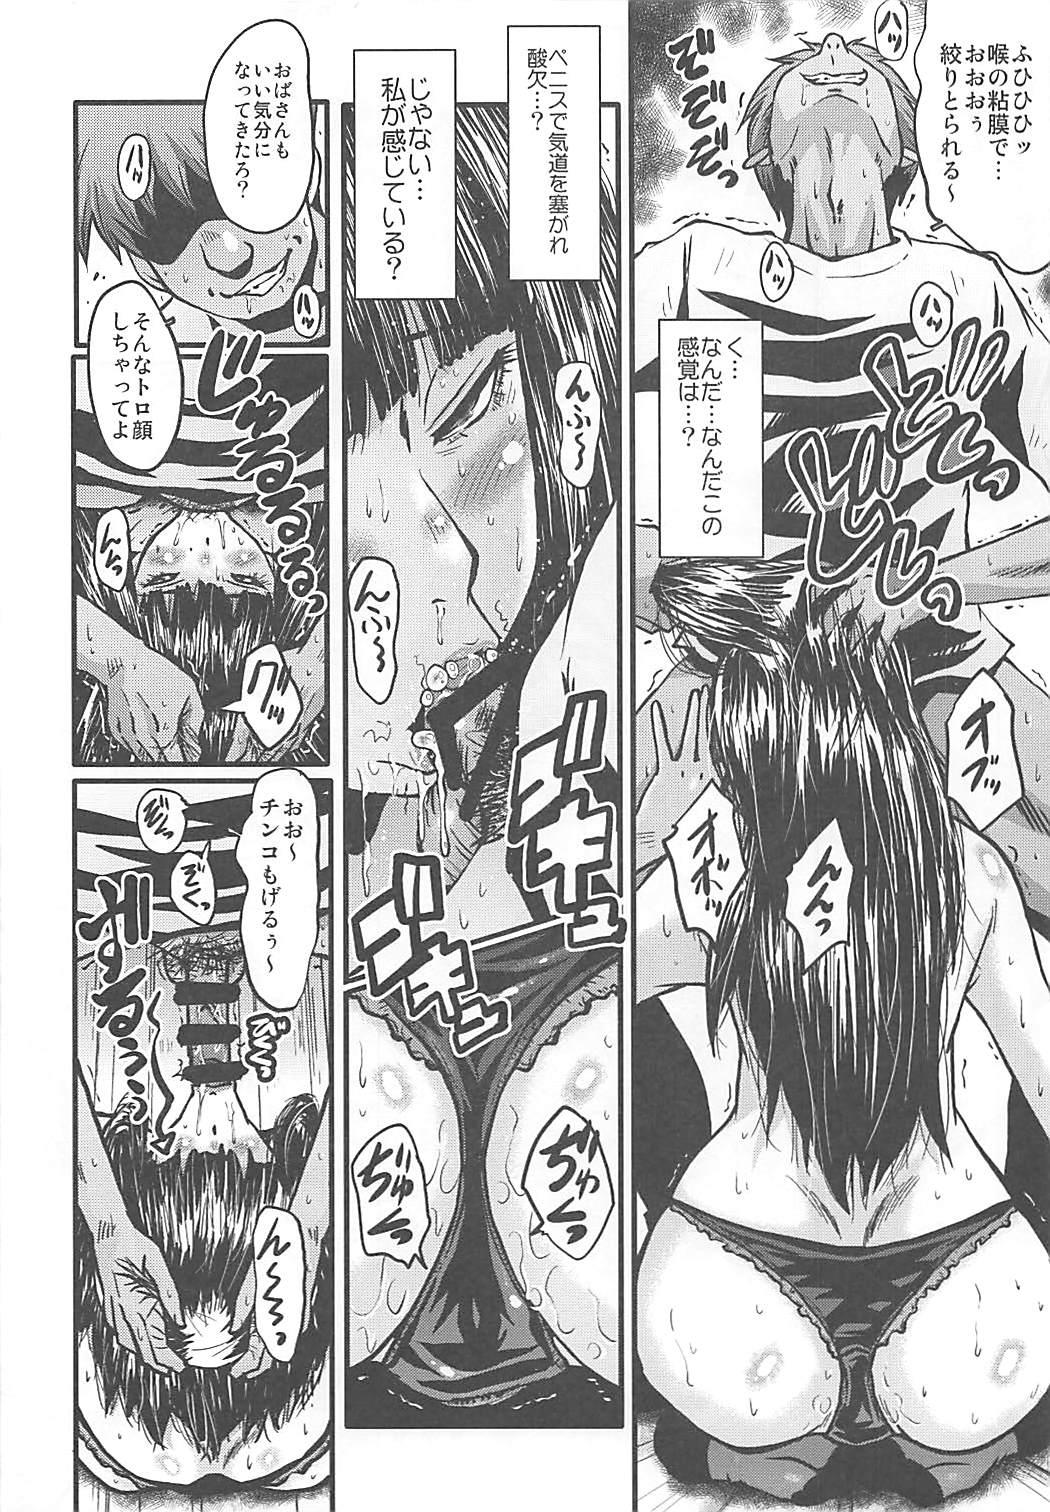 Caught (C93) [Urakata Honpo (SINK)] Urabambi Vol. 56 ~Choubatsubou no Oyako Ana~ Bijin Oyako no Kimeseku Kairaku Jigoku~ (Girls und Panzer) - Girls und panzer Full Movie - Page 11